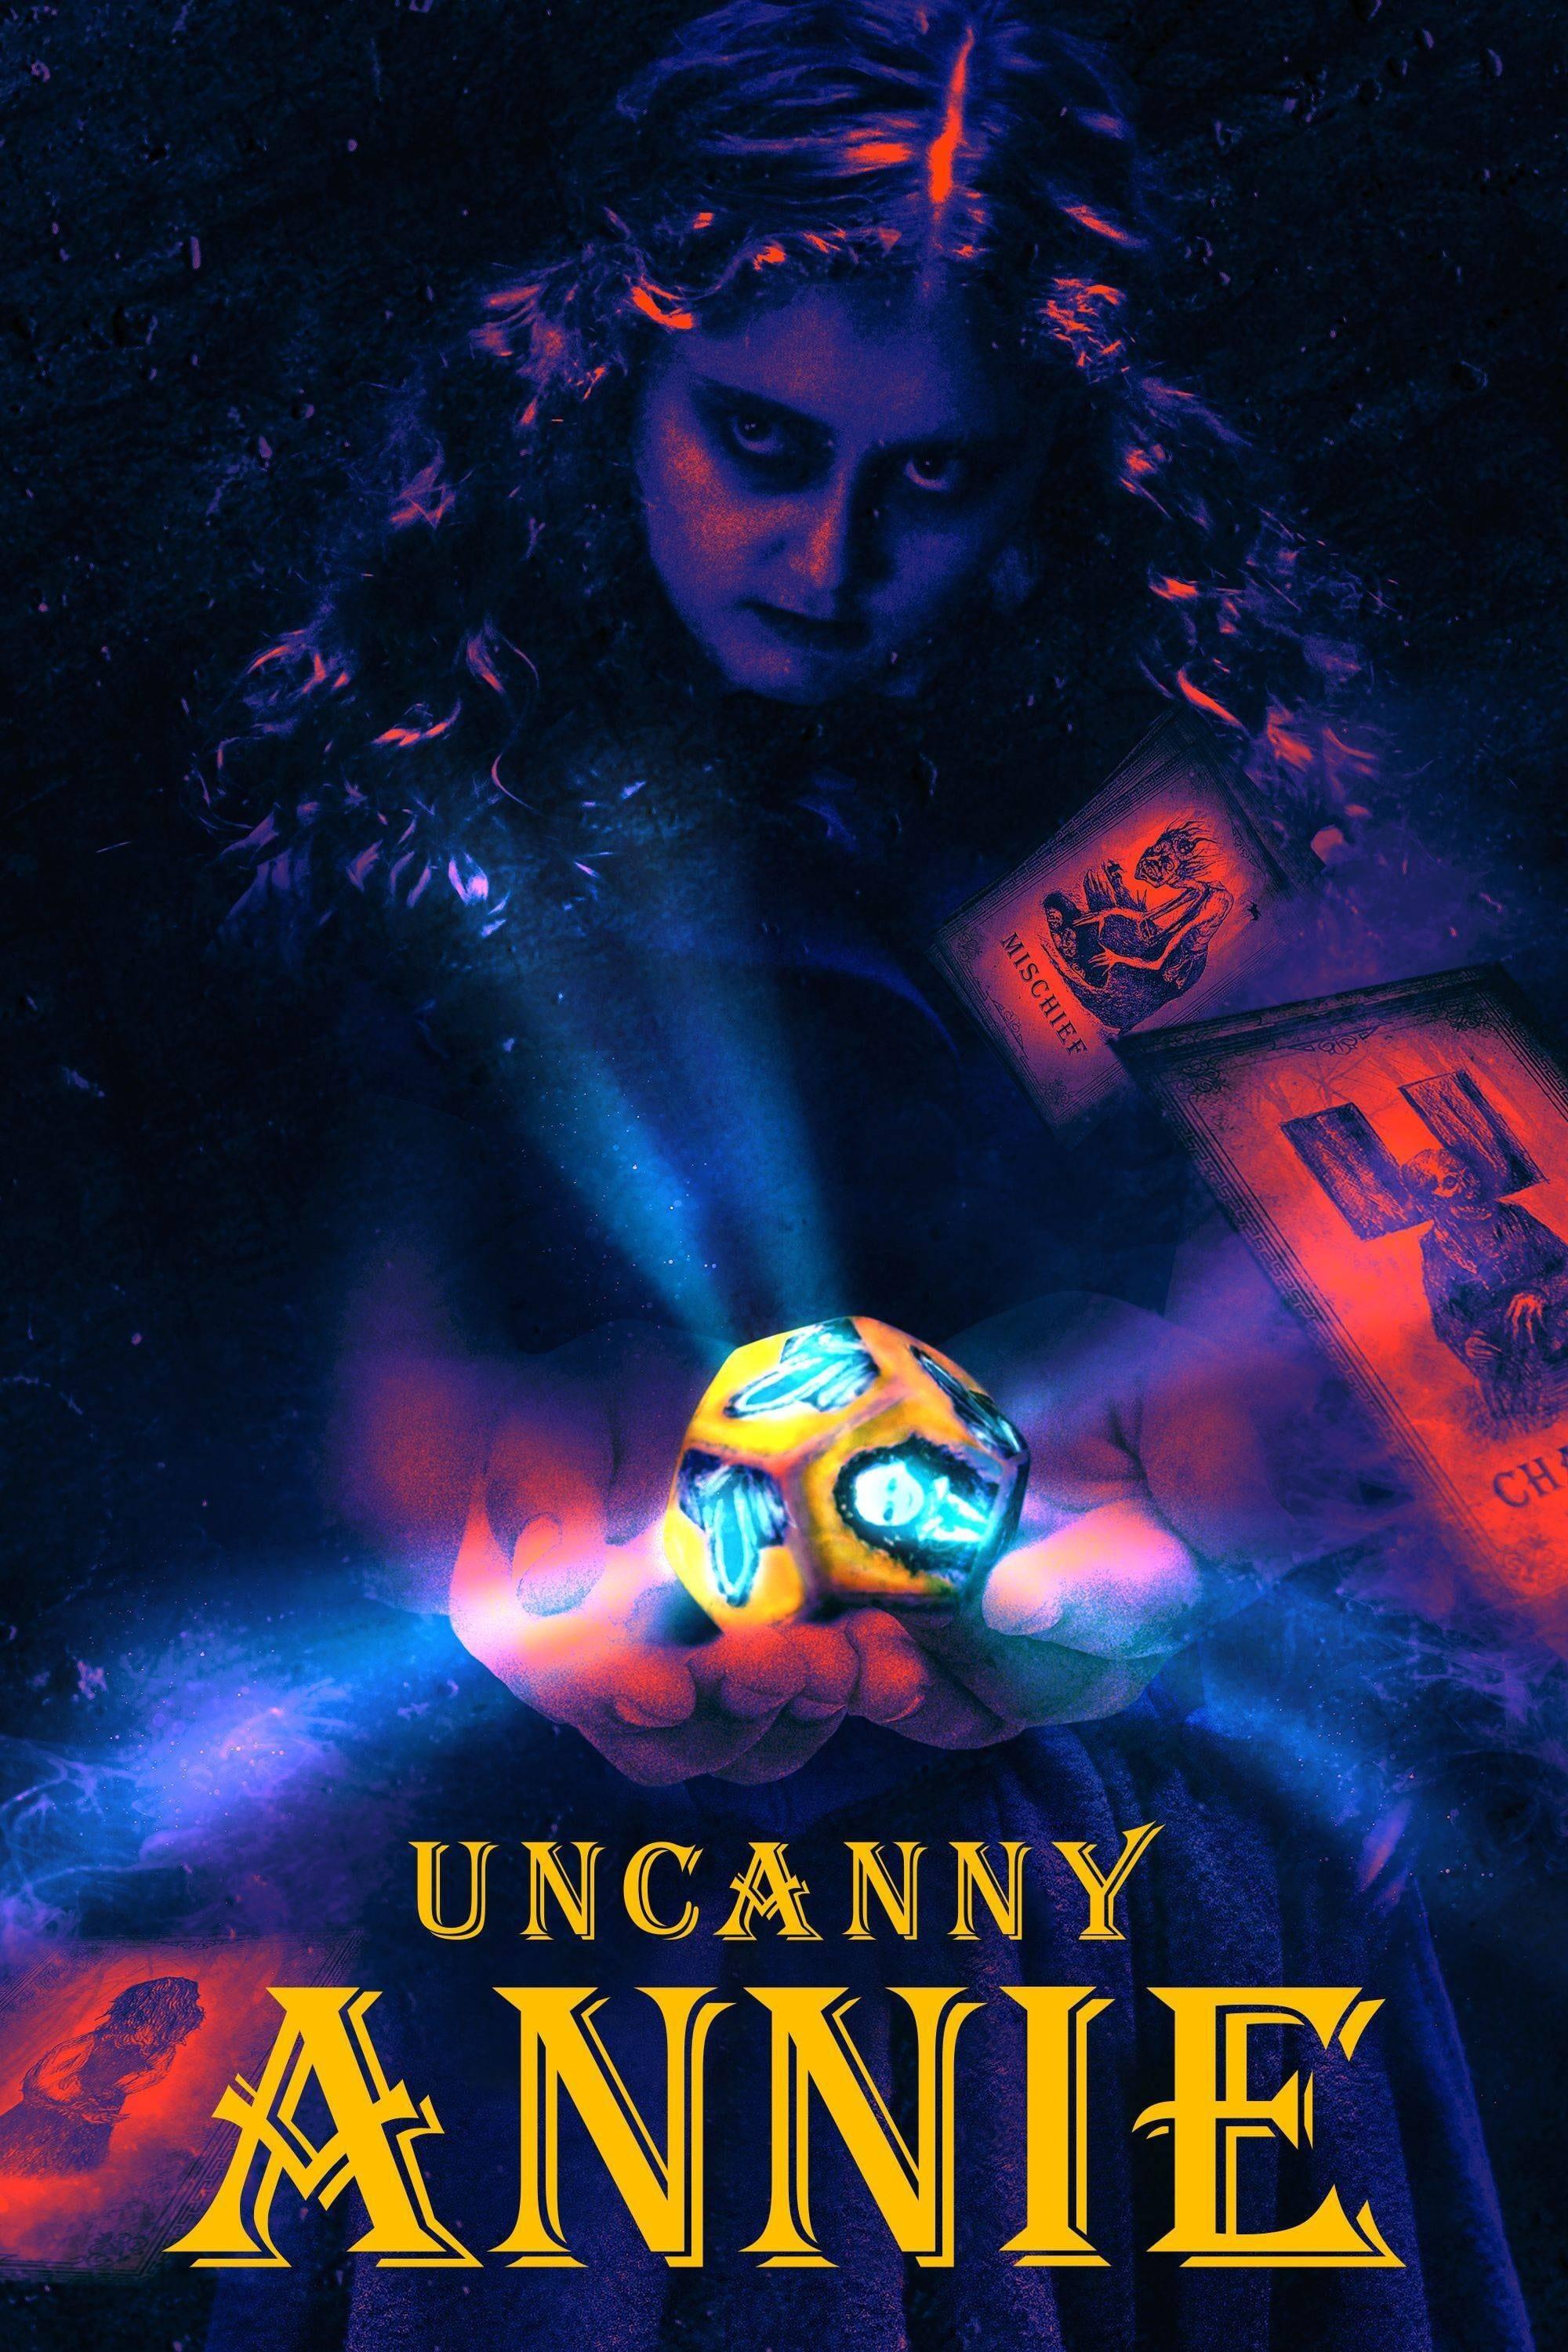 Uncanny Annie poster